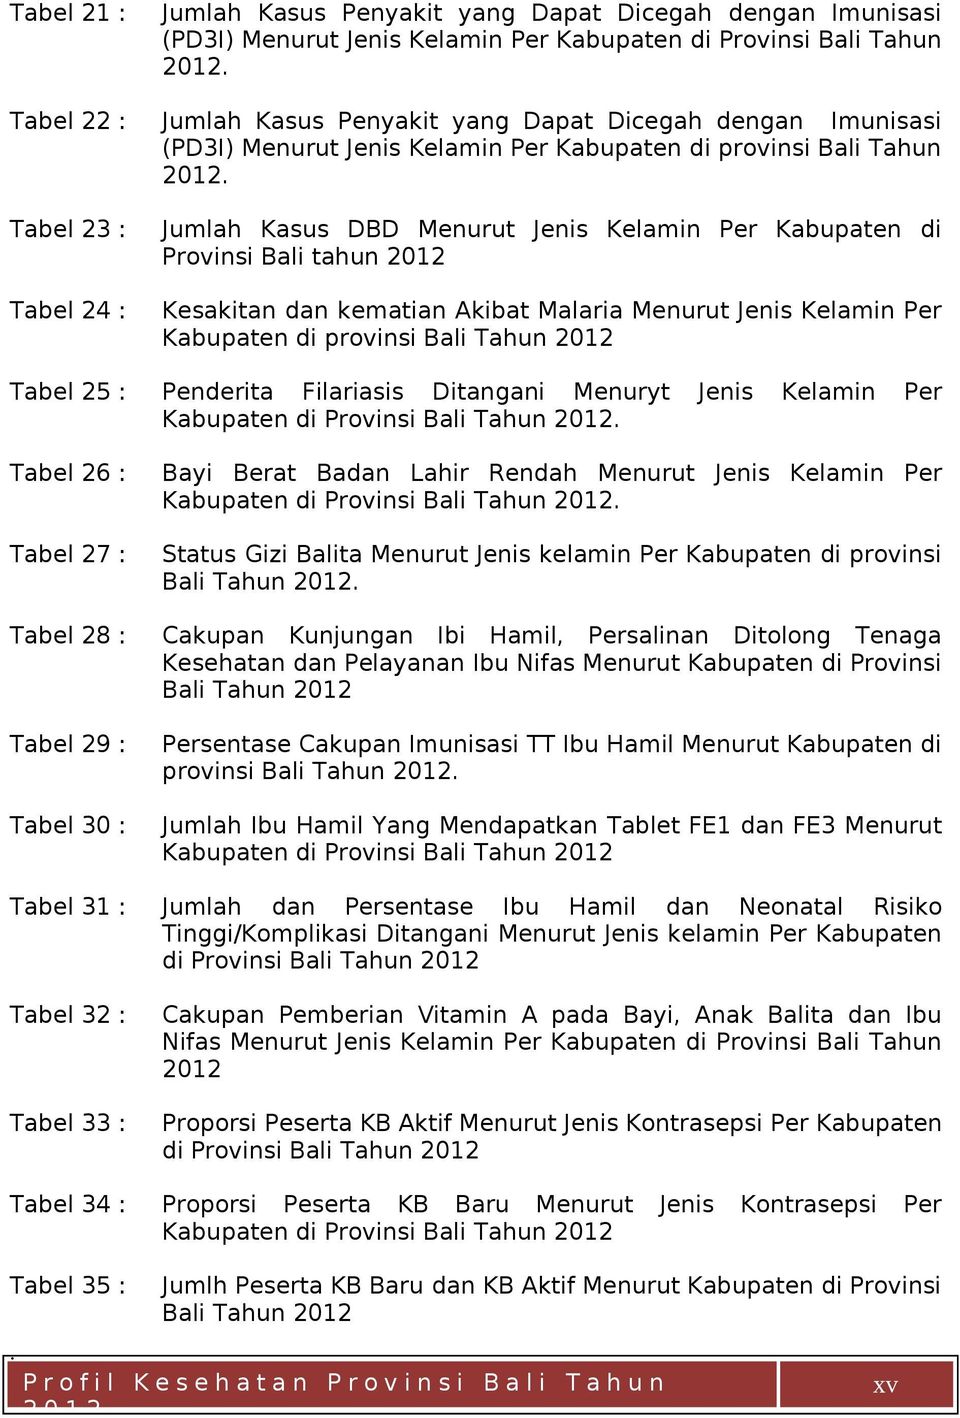 Jumlah Kasus Penyakit yang Dapat Dicegah dengan Imunisasi (PD3I) Menurut Jenis Kelamin Per Kabupaten di provinsi Bali Tahun 2012.